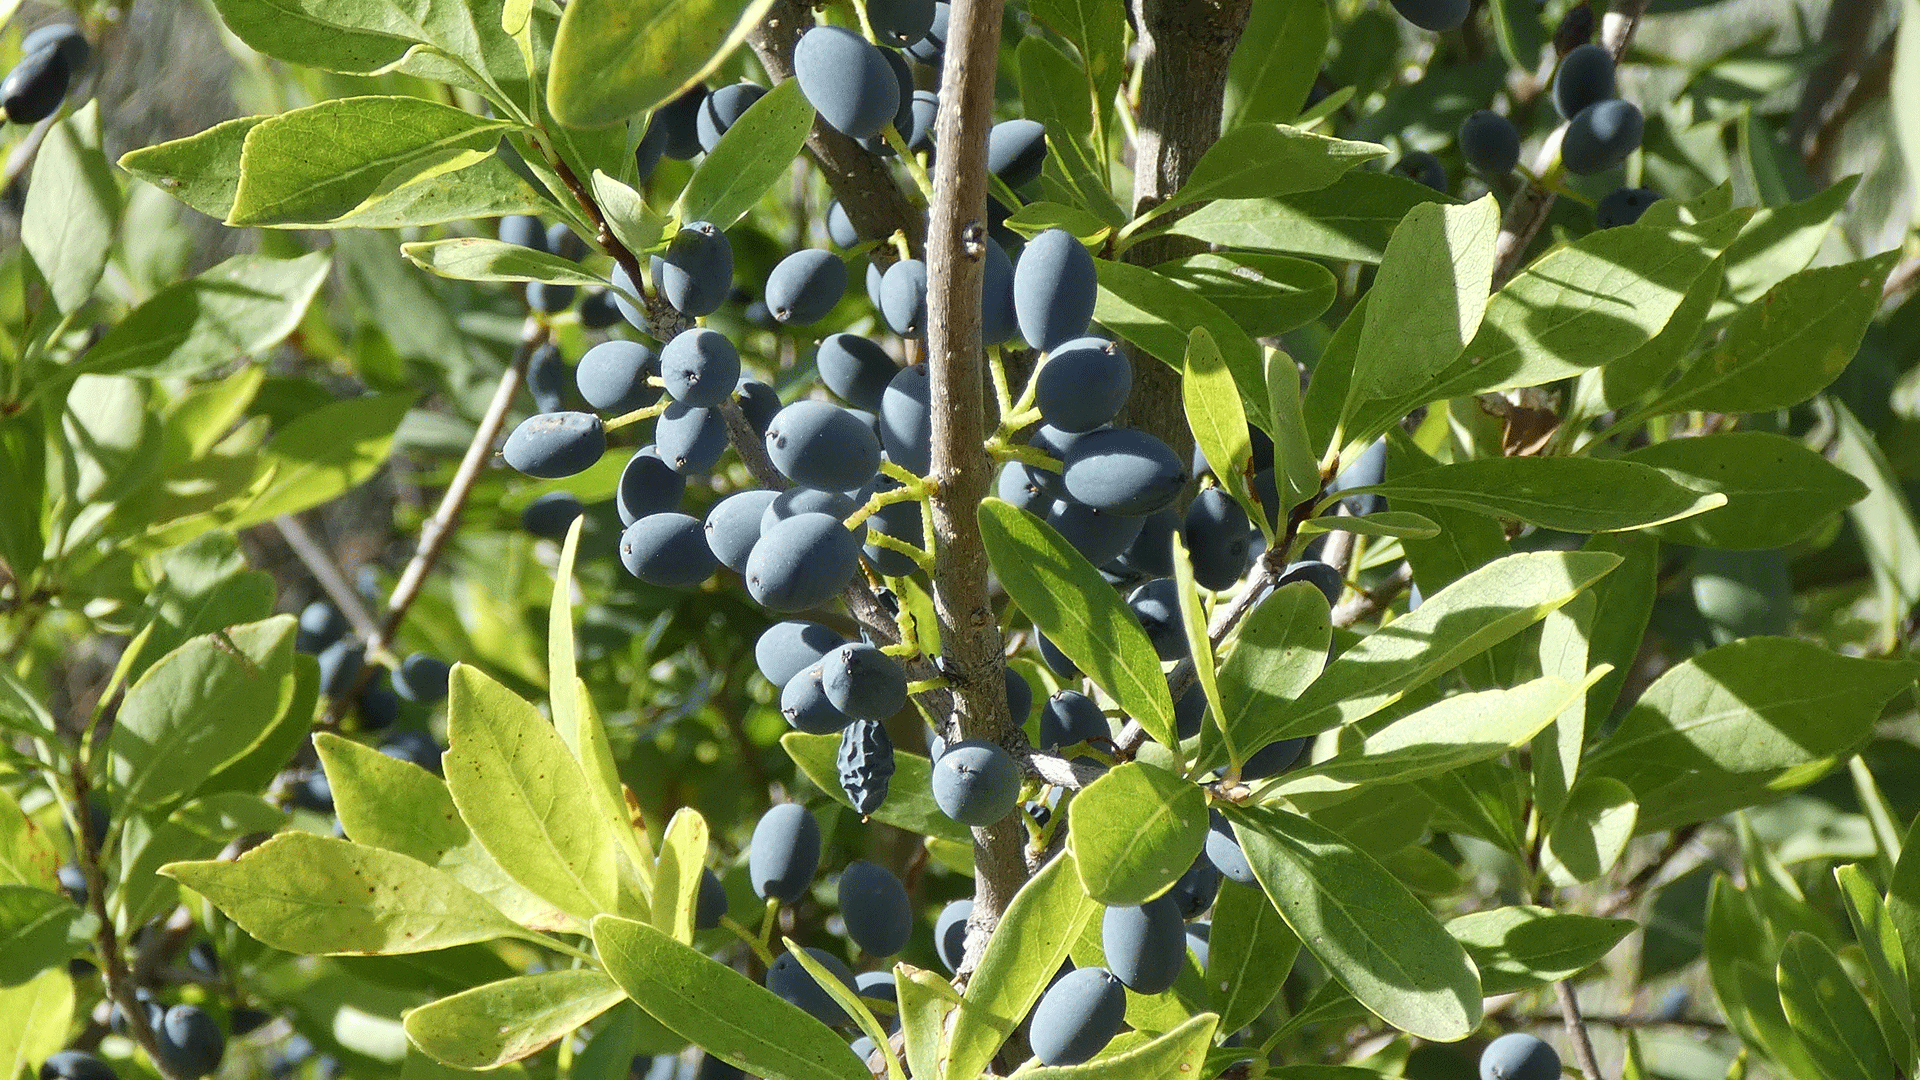 Fruit, Rio Grande Bosque, Albuquerque, August 2020